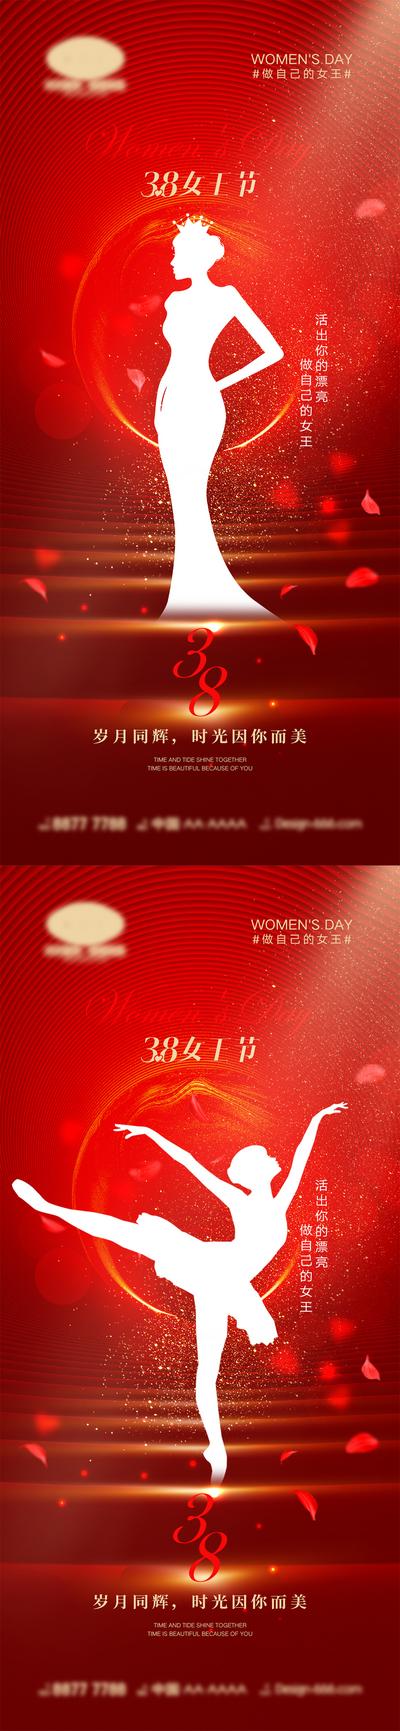 南门网 38妇女节海报